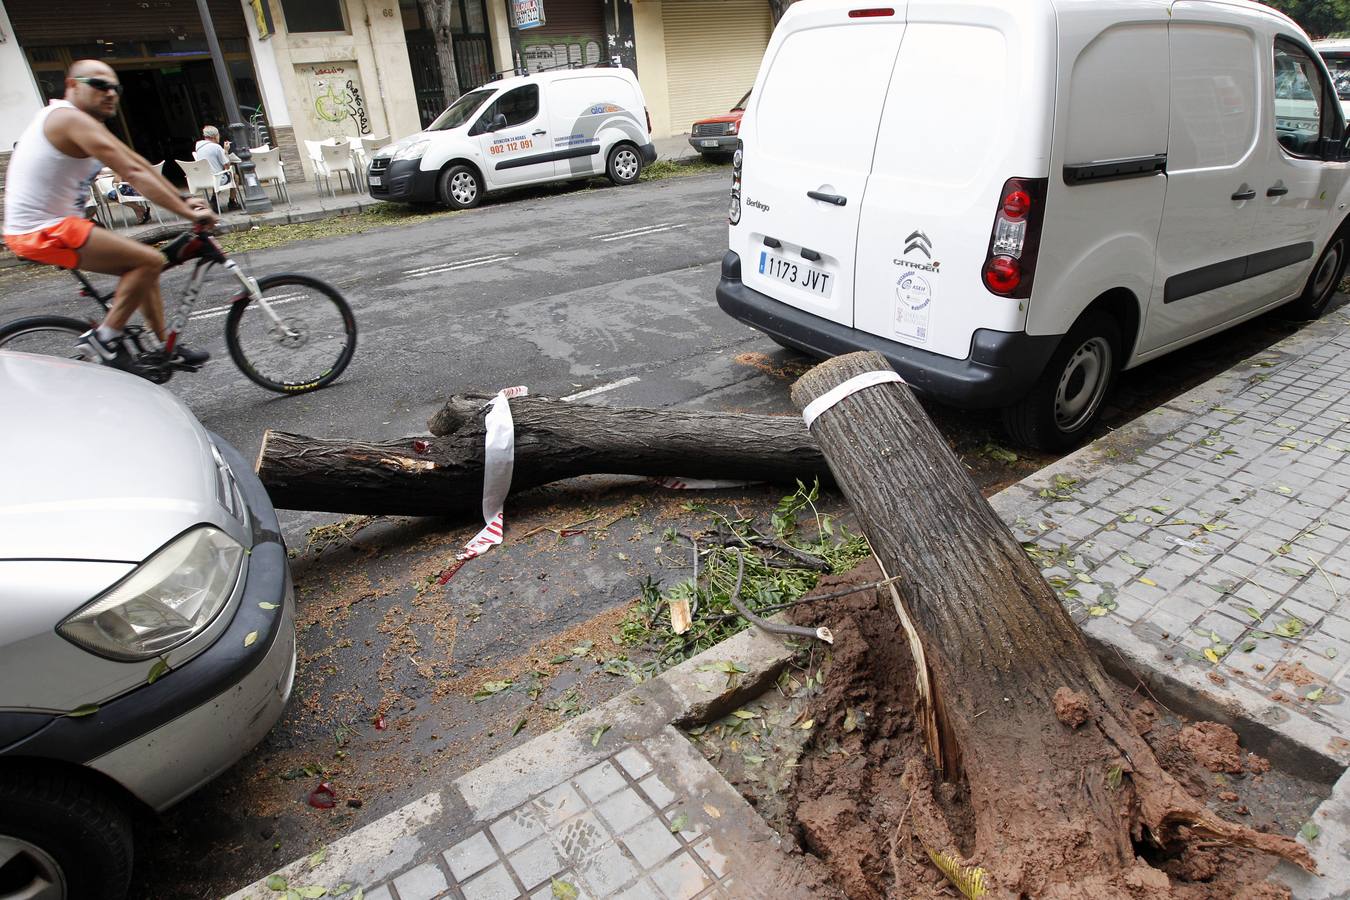 Caídas de árboles y ramas por la tormenta en la ciudad de Valencia.